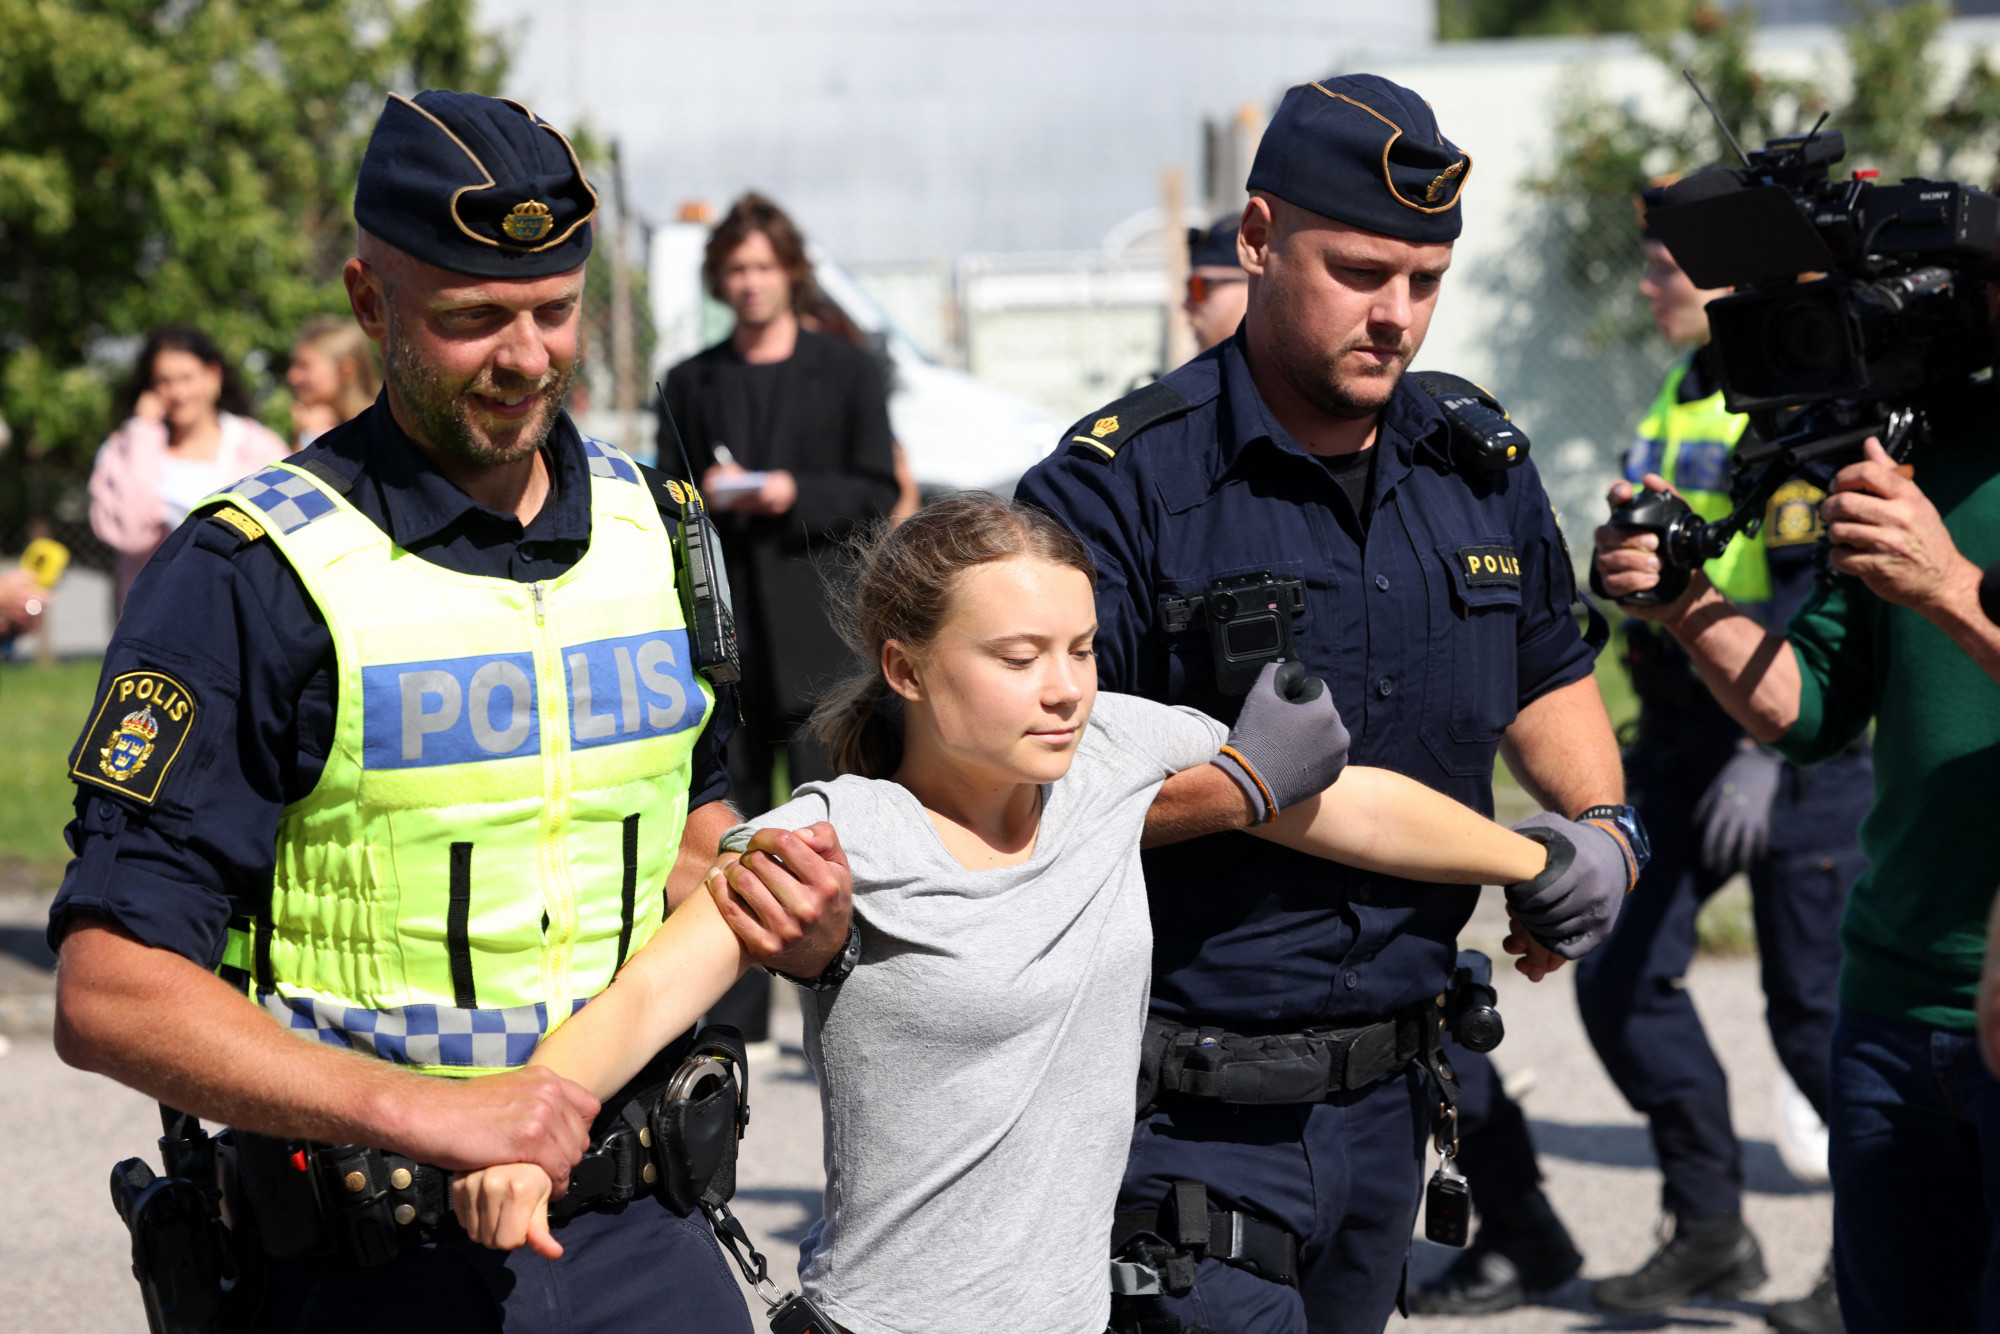 Greta Thunberg ellenszegült egy tüntetésen a rendőröknek, nem sokkal azután, hogy megbírságolták, mert egy korábbi tüntetésen ellenszegült a rendőröknek